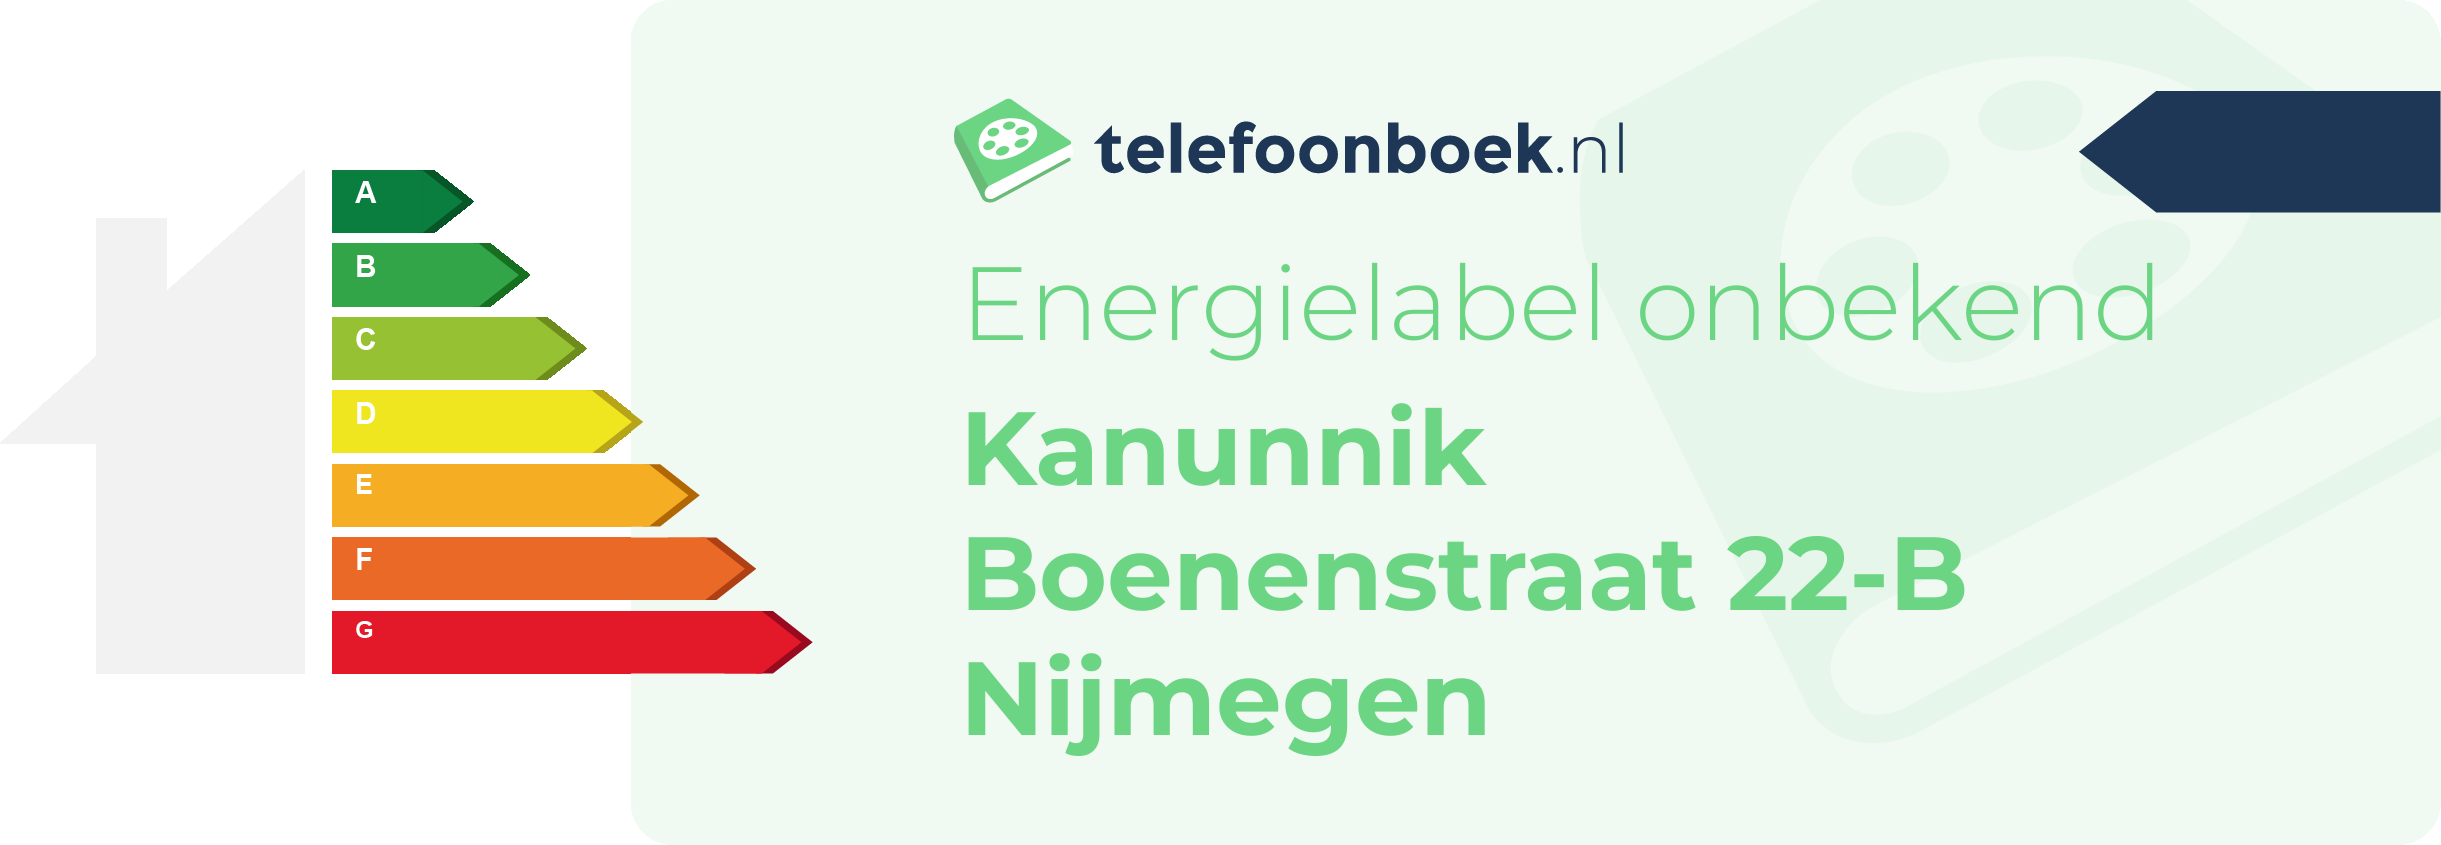 Energielabel Kanunnik Boenenstraat 22-B Nijmegen